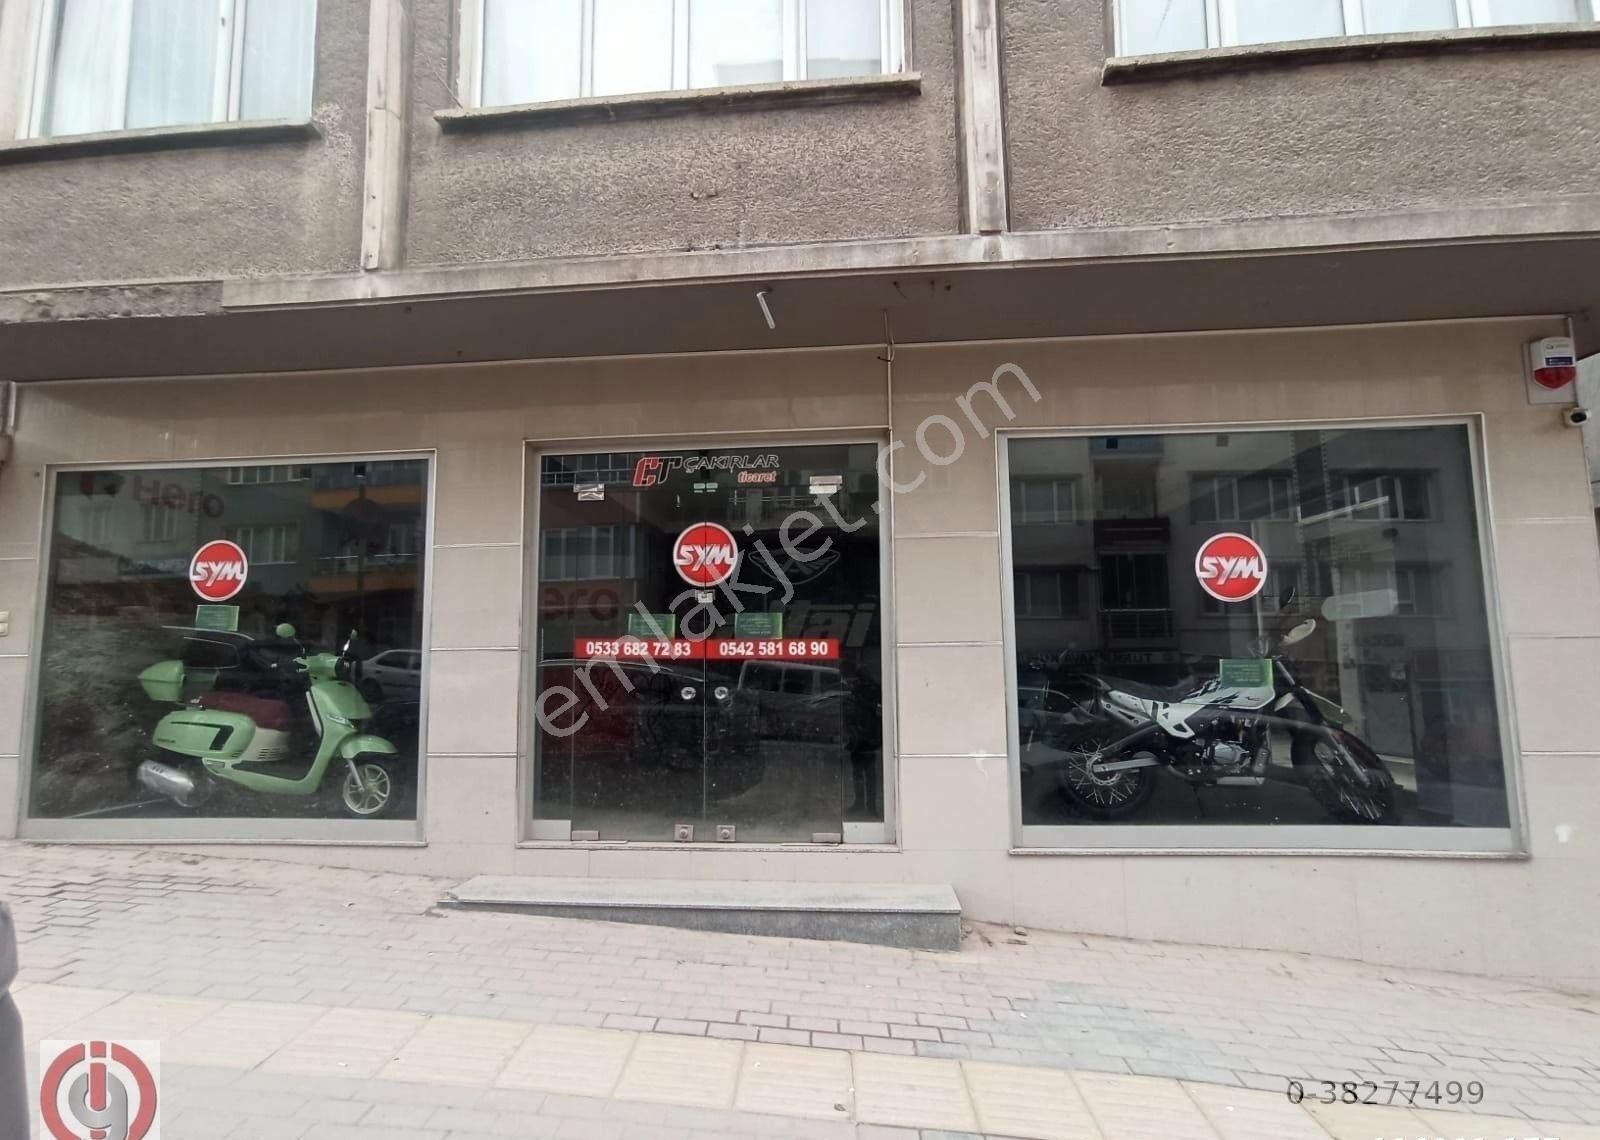 Mustafakemalpaşa Şeyhmüftü Satılık Dükkan & Mağaza İnceoğlundan Şeyhmüftü'de Cadde Üzeri Satılık Köşe Dükkan